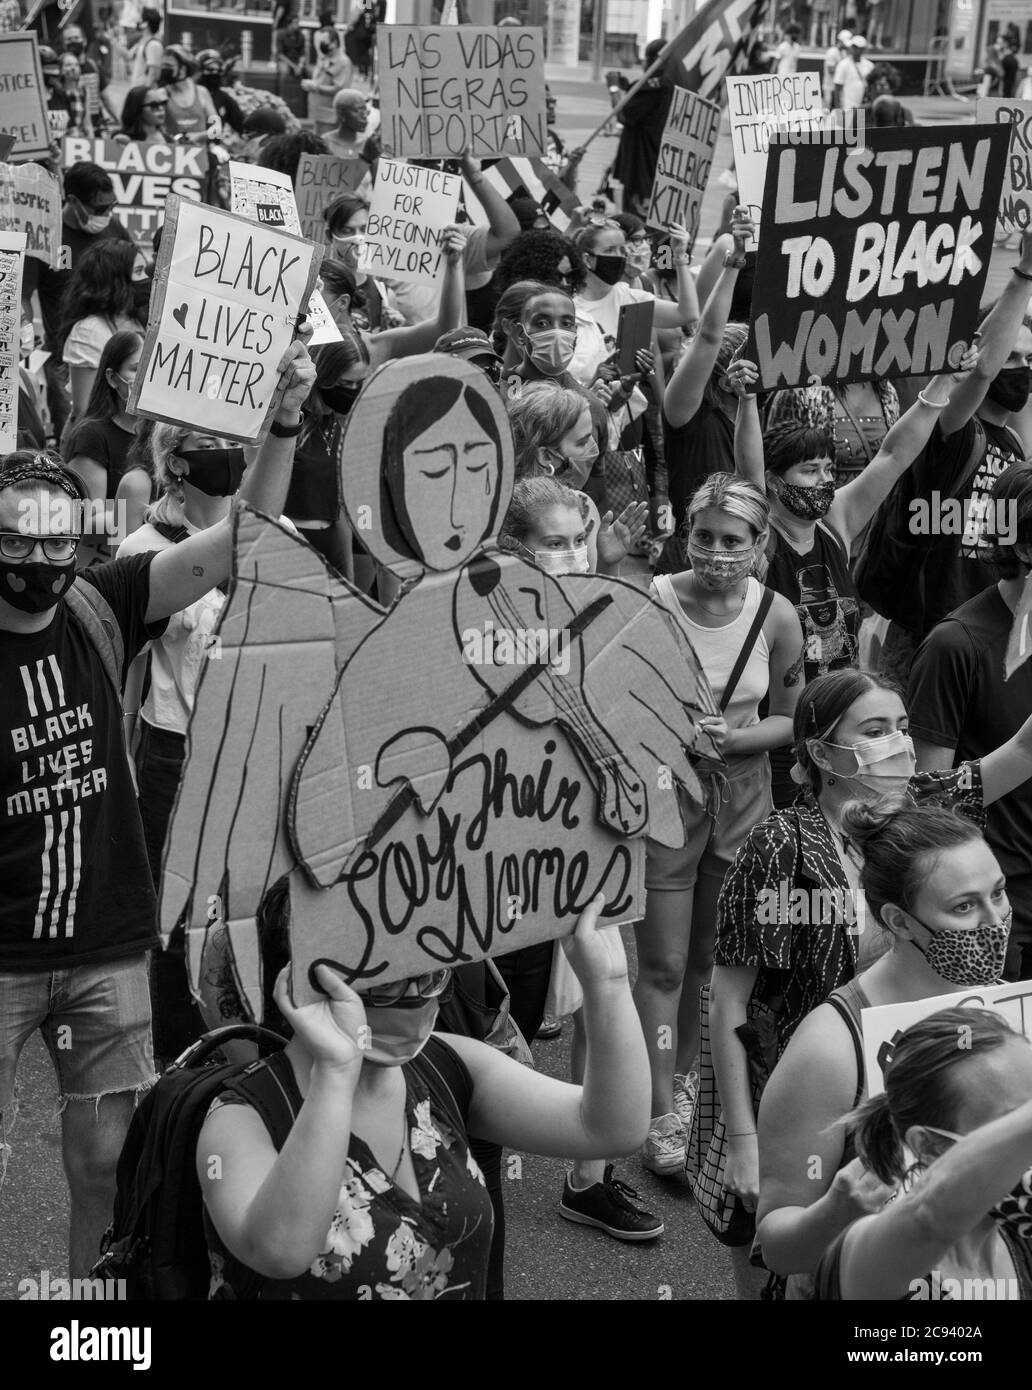 Black Womens/Womxn March Black Lives Matter Protest - Marche des gens marchant avec des signes puissants. Anges et écoute des femmes noires Banque D'Images